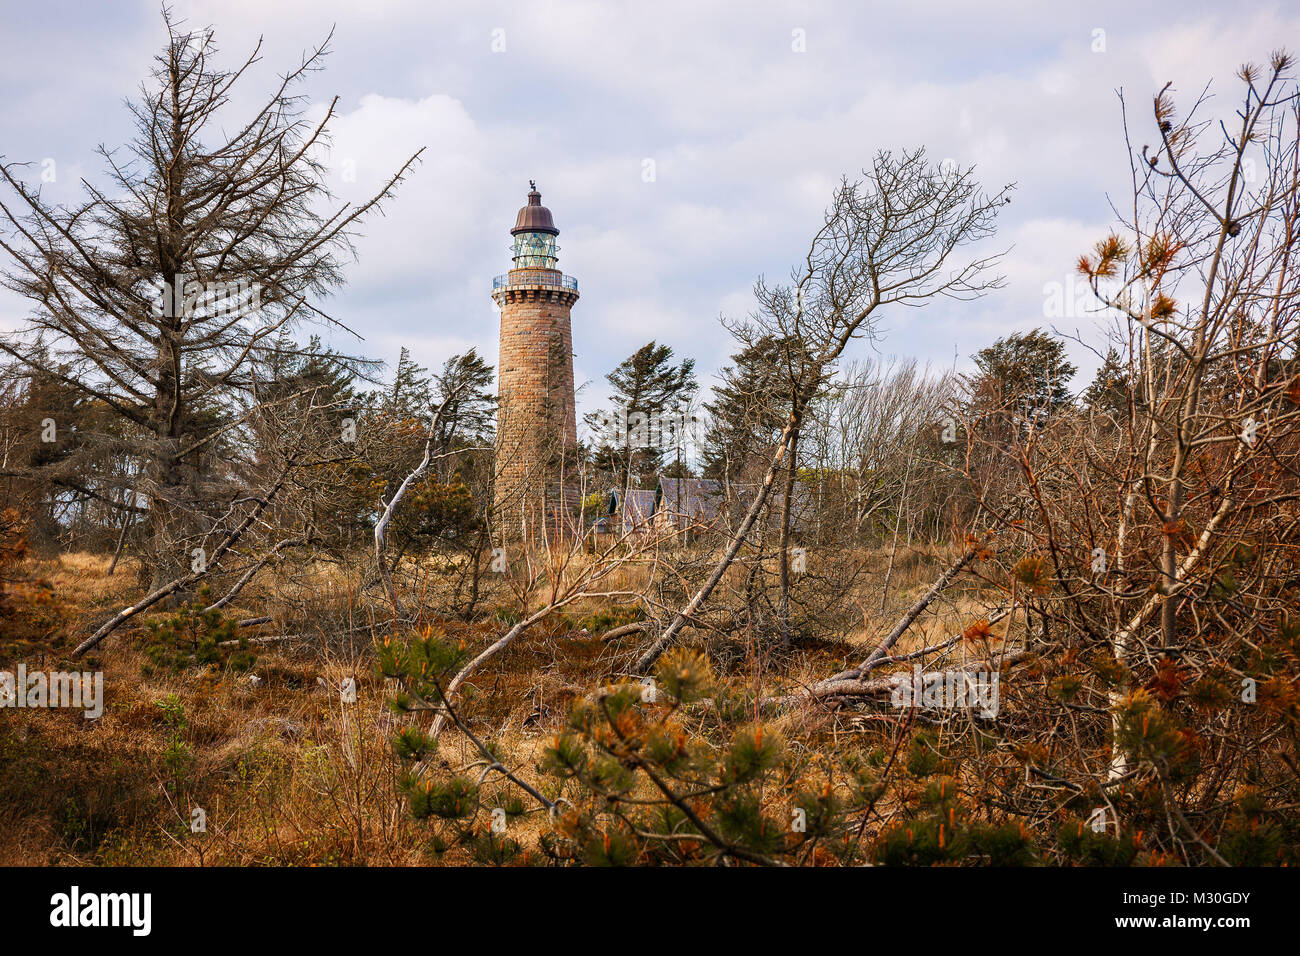 Il Lighthouse Lodberg Fyr vicino Agger, in Danimarca è stato costruito in un bosco vicino alla costa Foto Stock